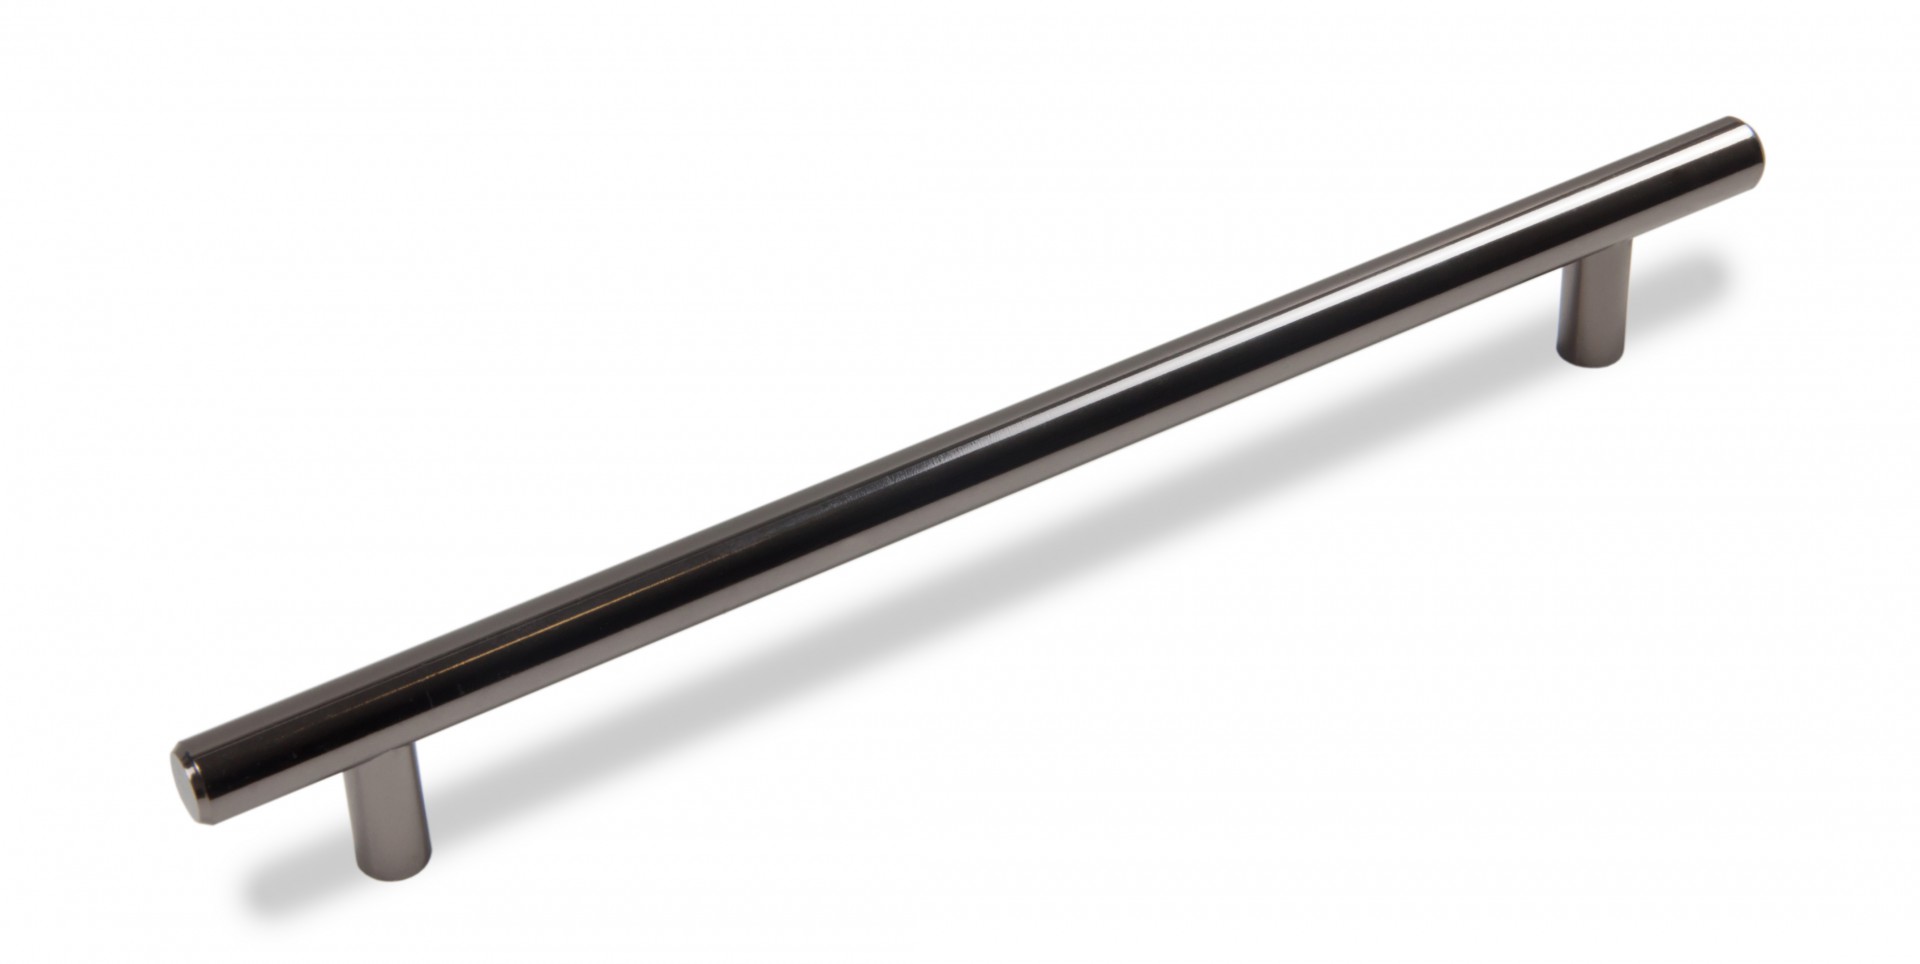 Ручка мебельная рейлинг 160мм черный никель RR002BN.5/160 Boyard / 719947-5 / оптом и в розницу / мебельная фурнитура "ЛАВР"